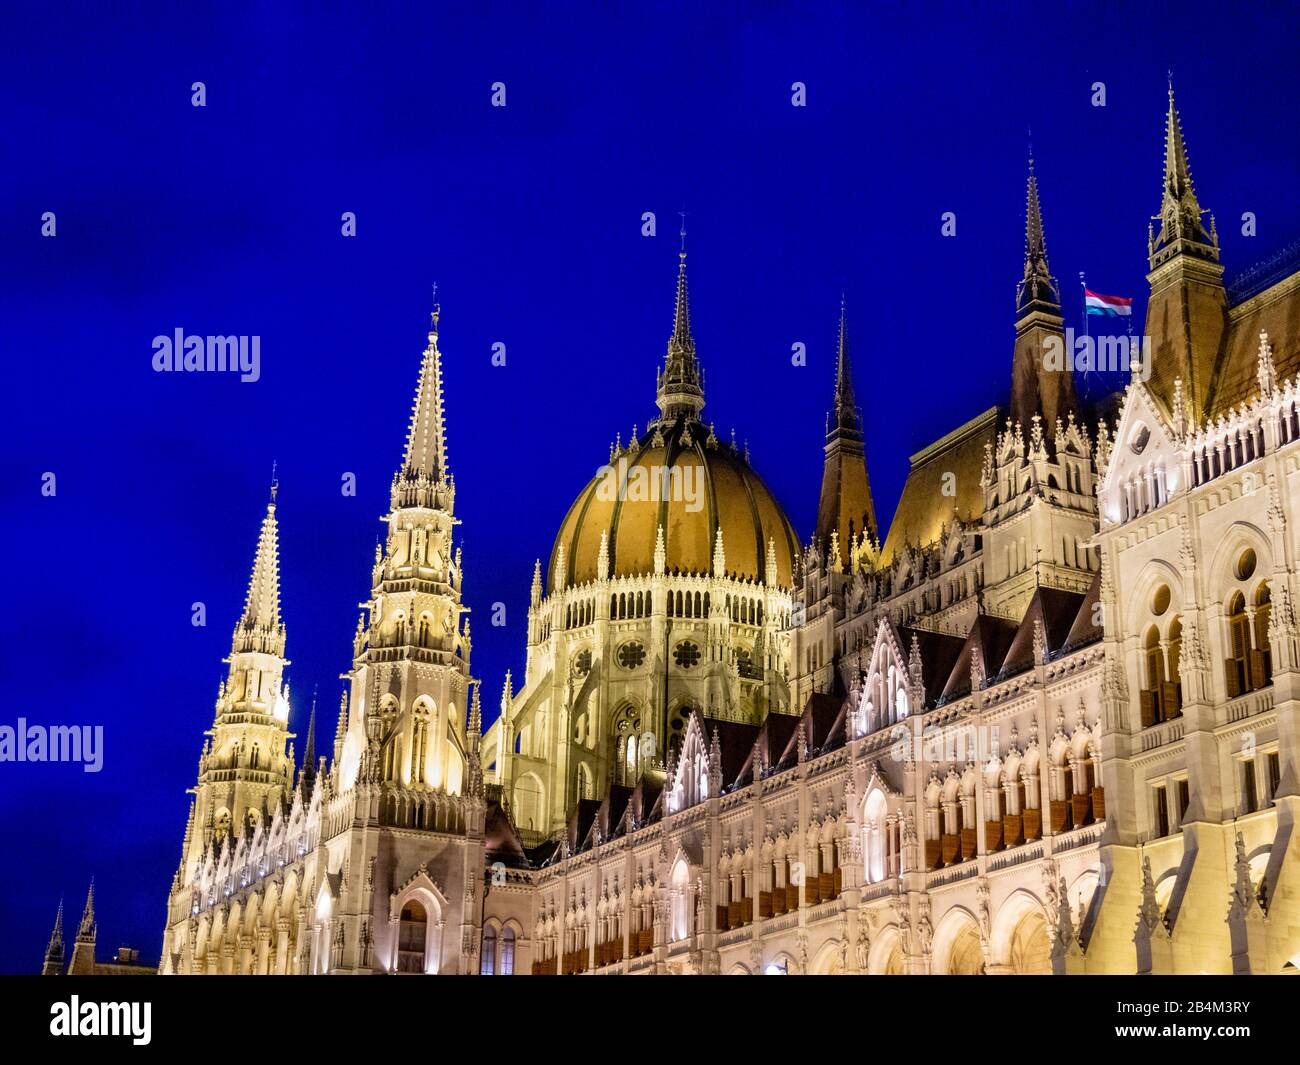 La cupola centrale Degli Edifici del Parlamento ungherese: Illuminata al tramonto, le torri e la cupola degli enormi edifici del Parlamento ungherese si affacciano sul cielo notturno blu scuro. Foto Stock